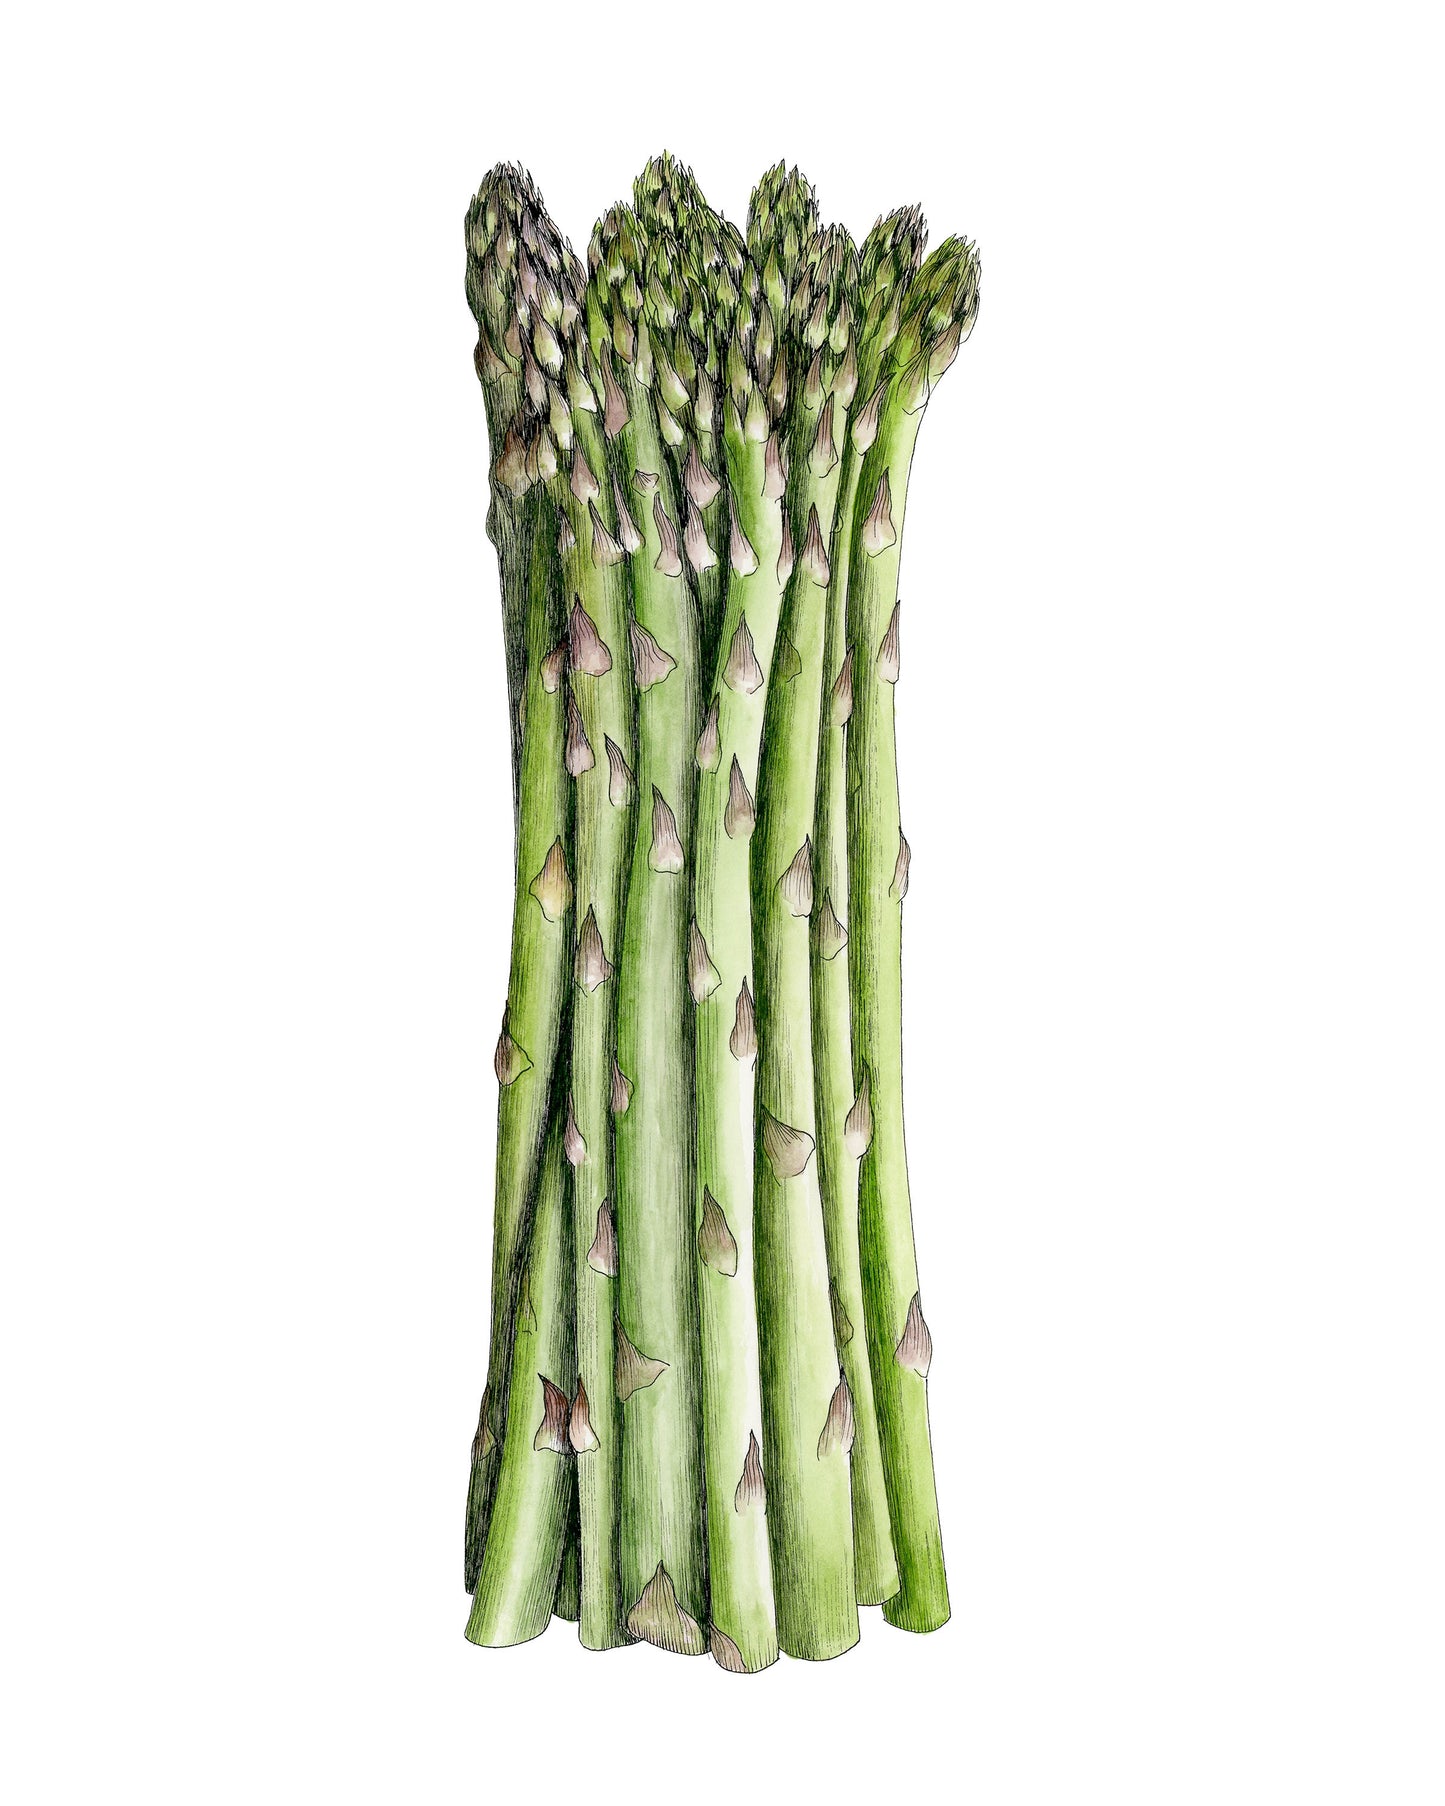 Asparagus Botanical Illustration